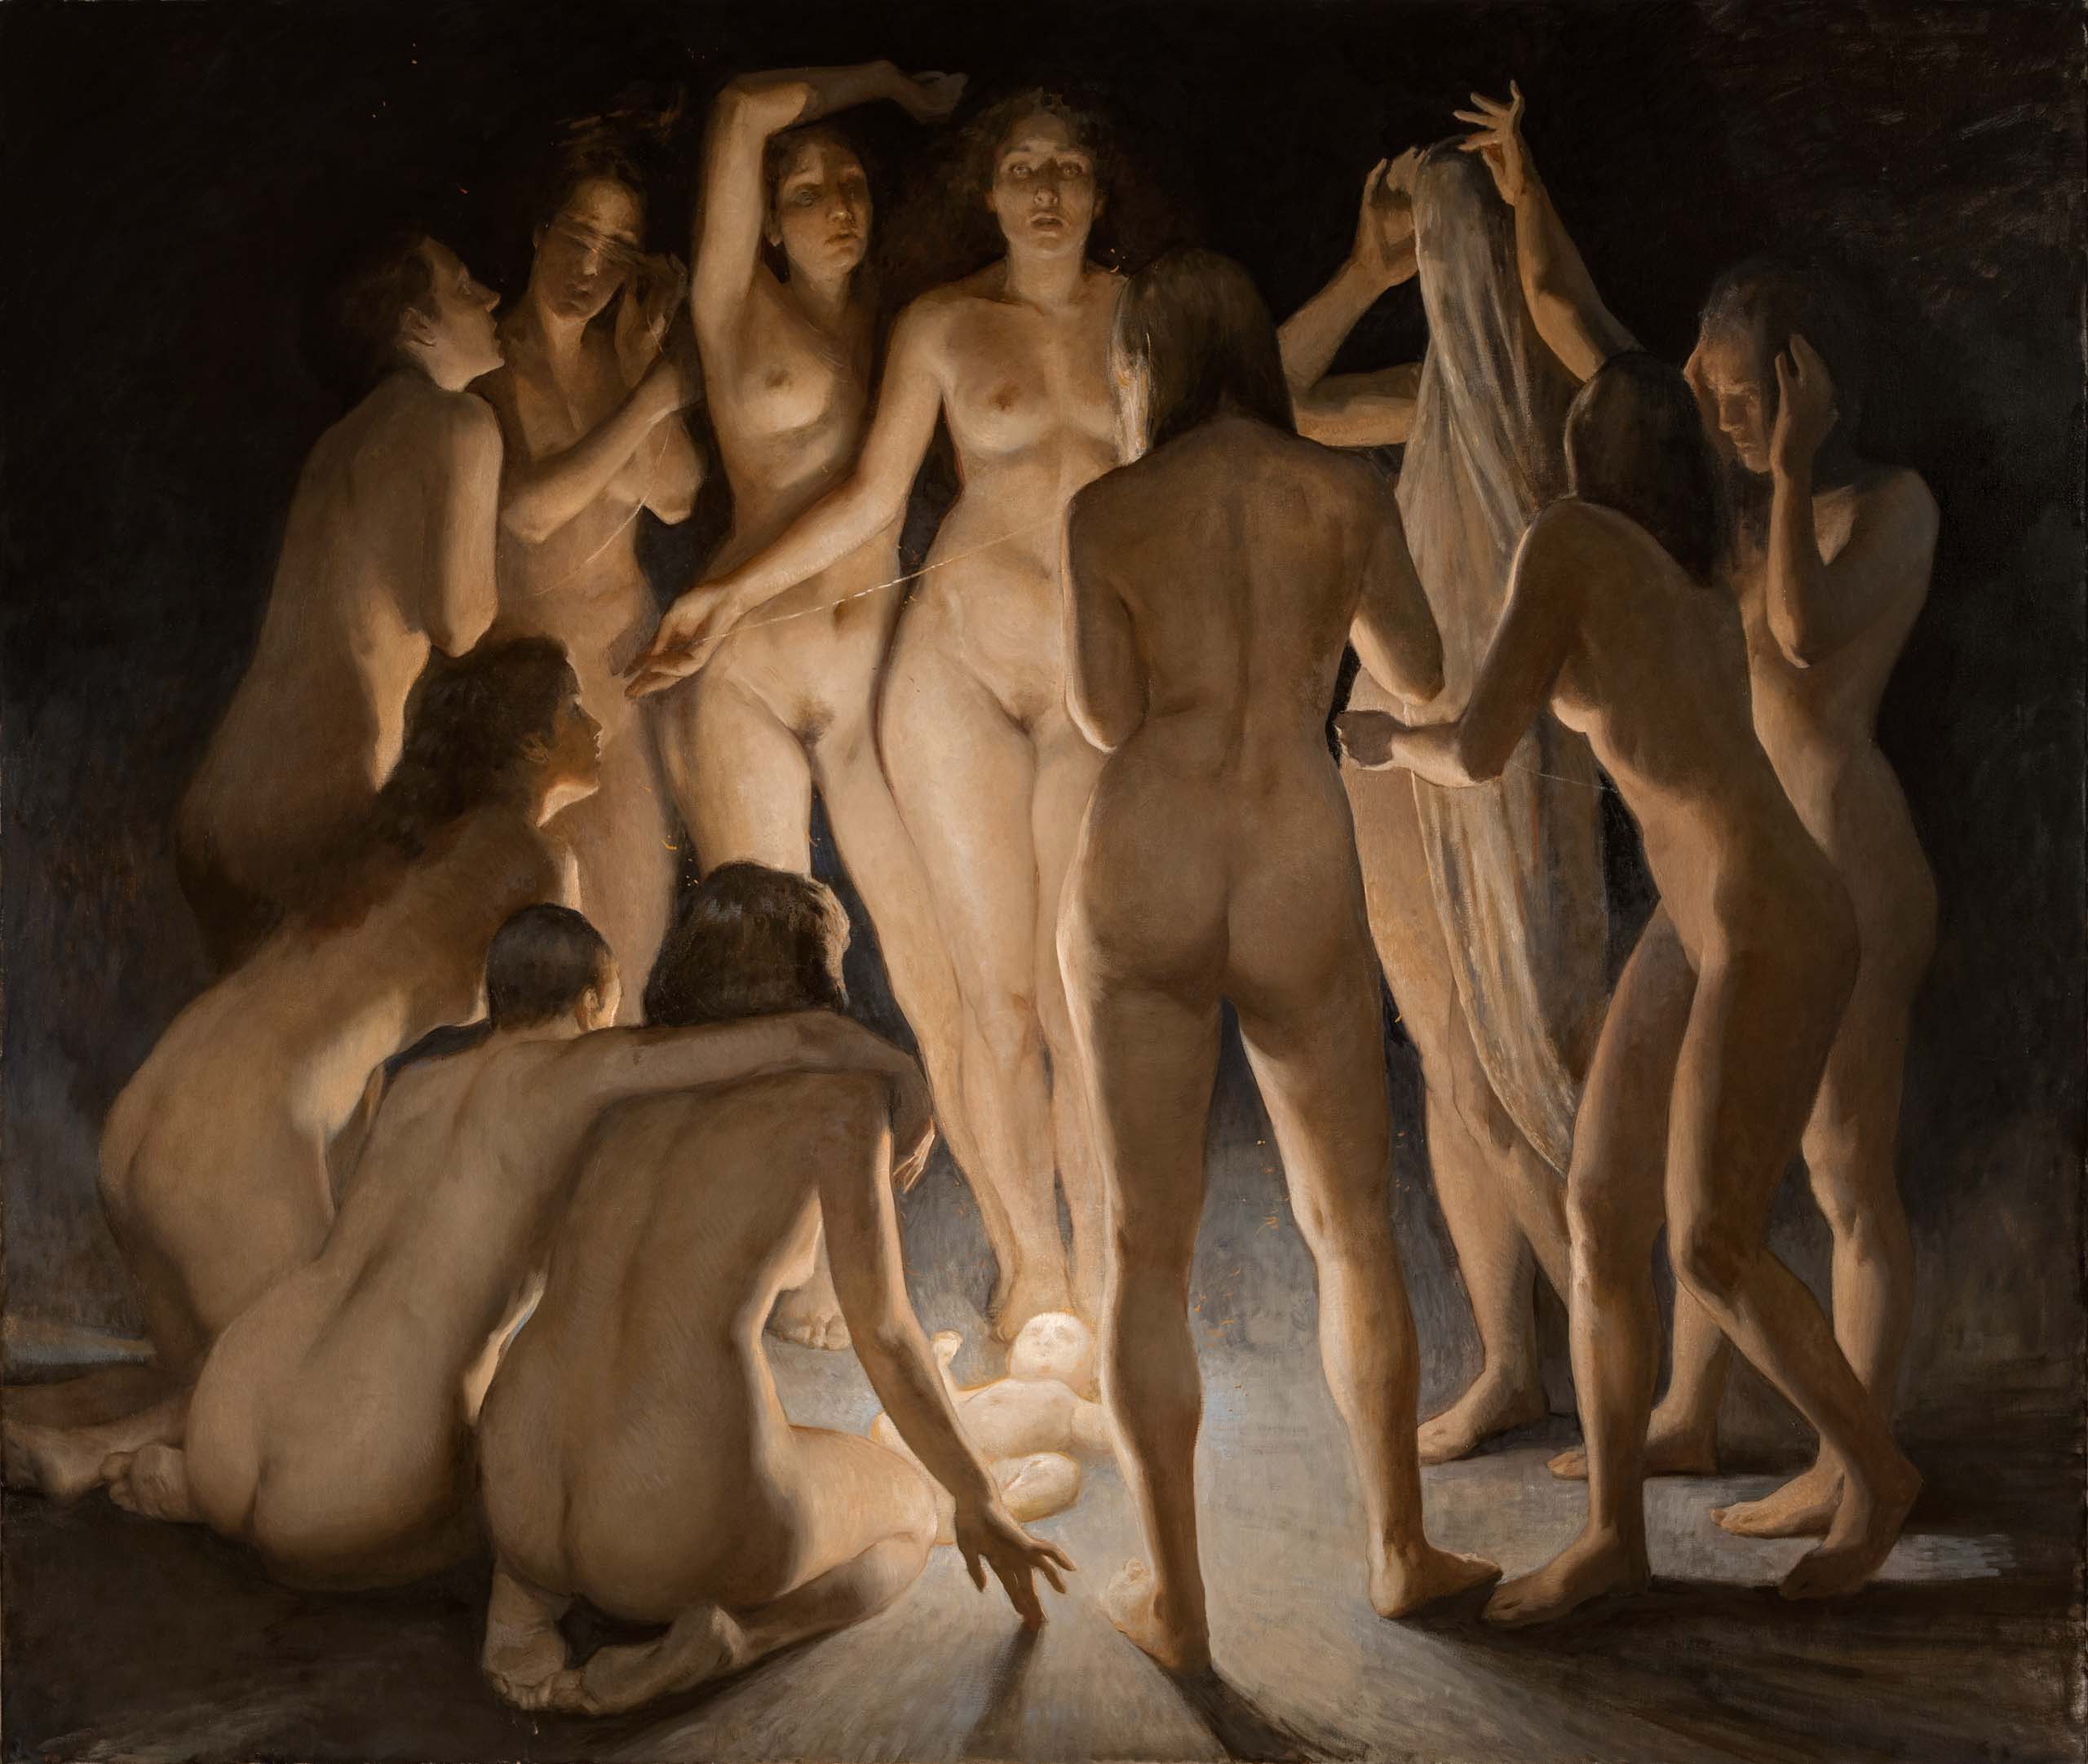 Daniela Astone, "12", Oil on linen 170 x 200 cm, 2021